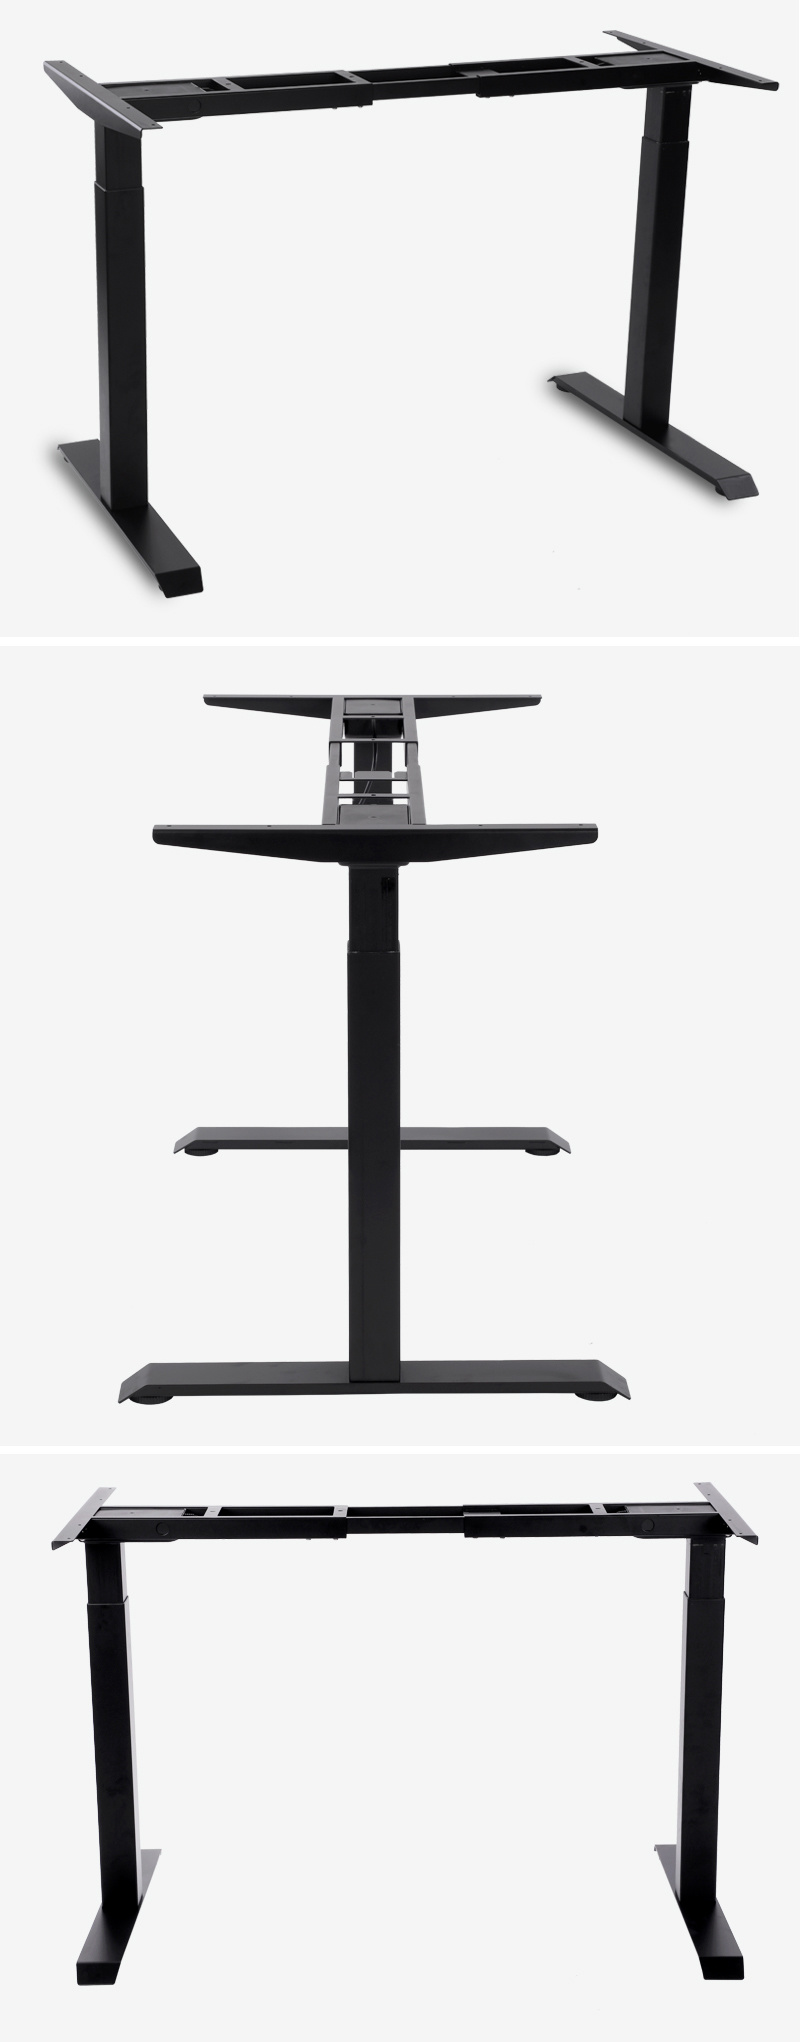 Electric Standing Desk Height Adjustable Desk Sit Stand Desk Home Office Workstation Stand up Desk